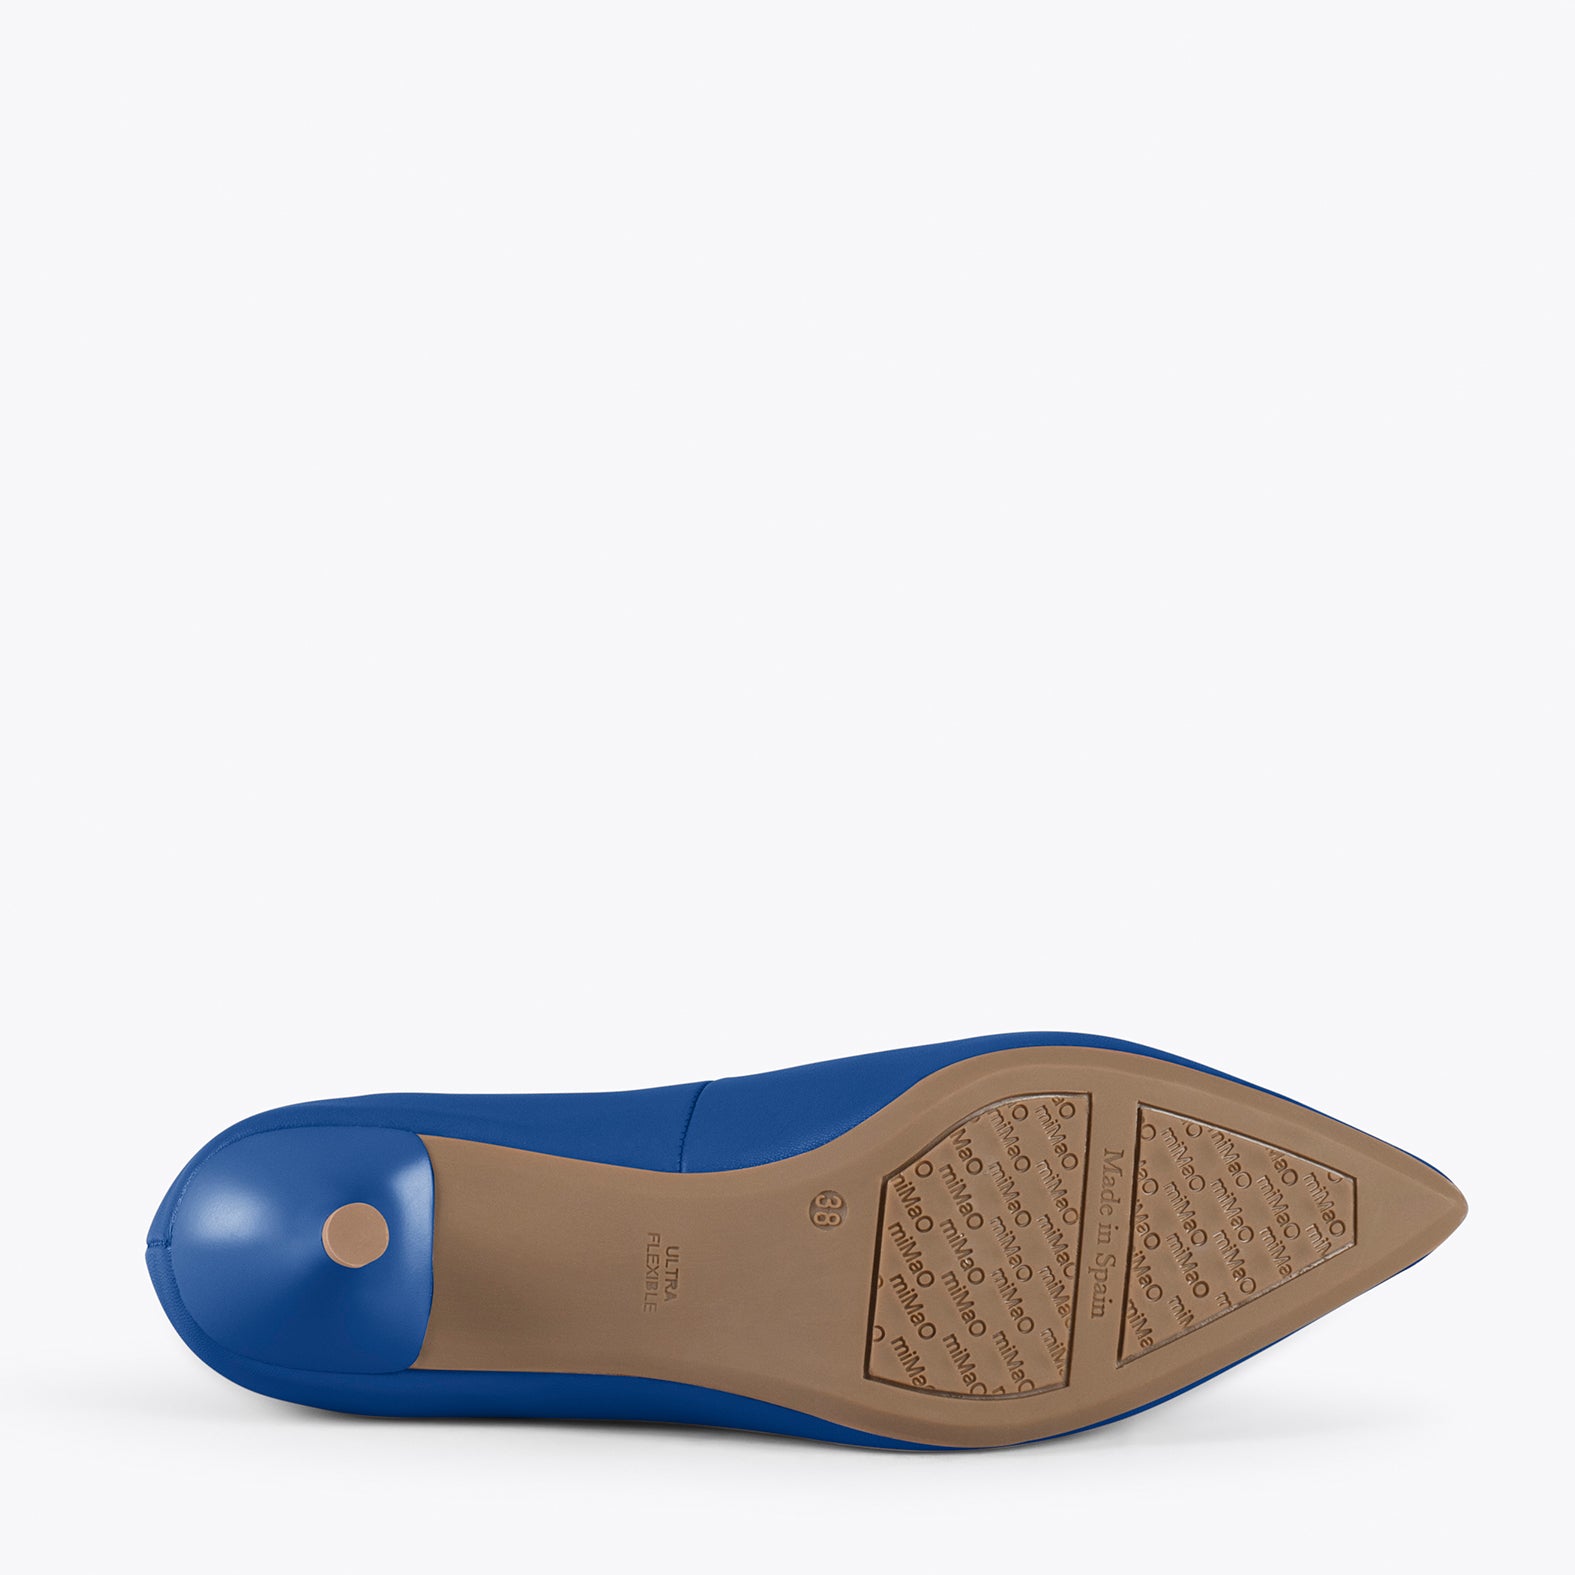 URBAN KITTEN – ELECTRIC BLUE nappa leather kitten heels